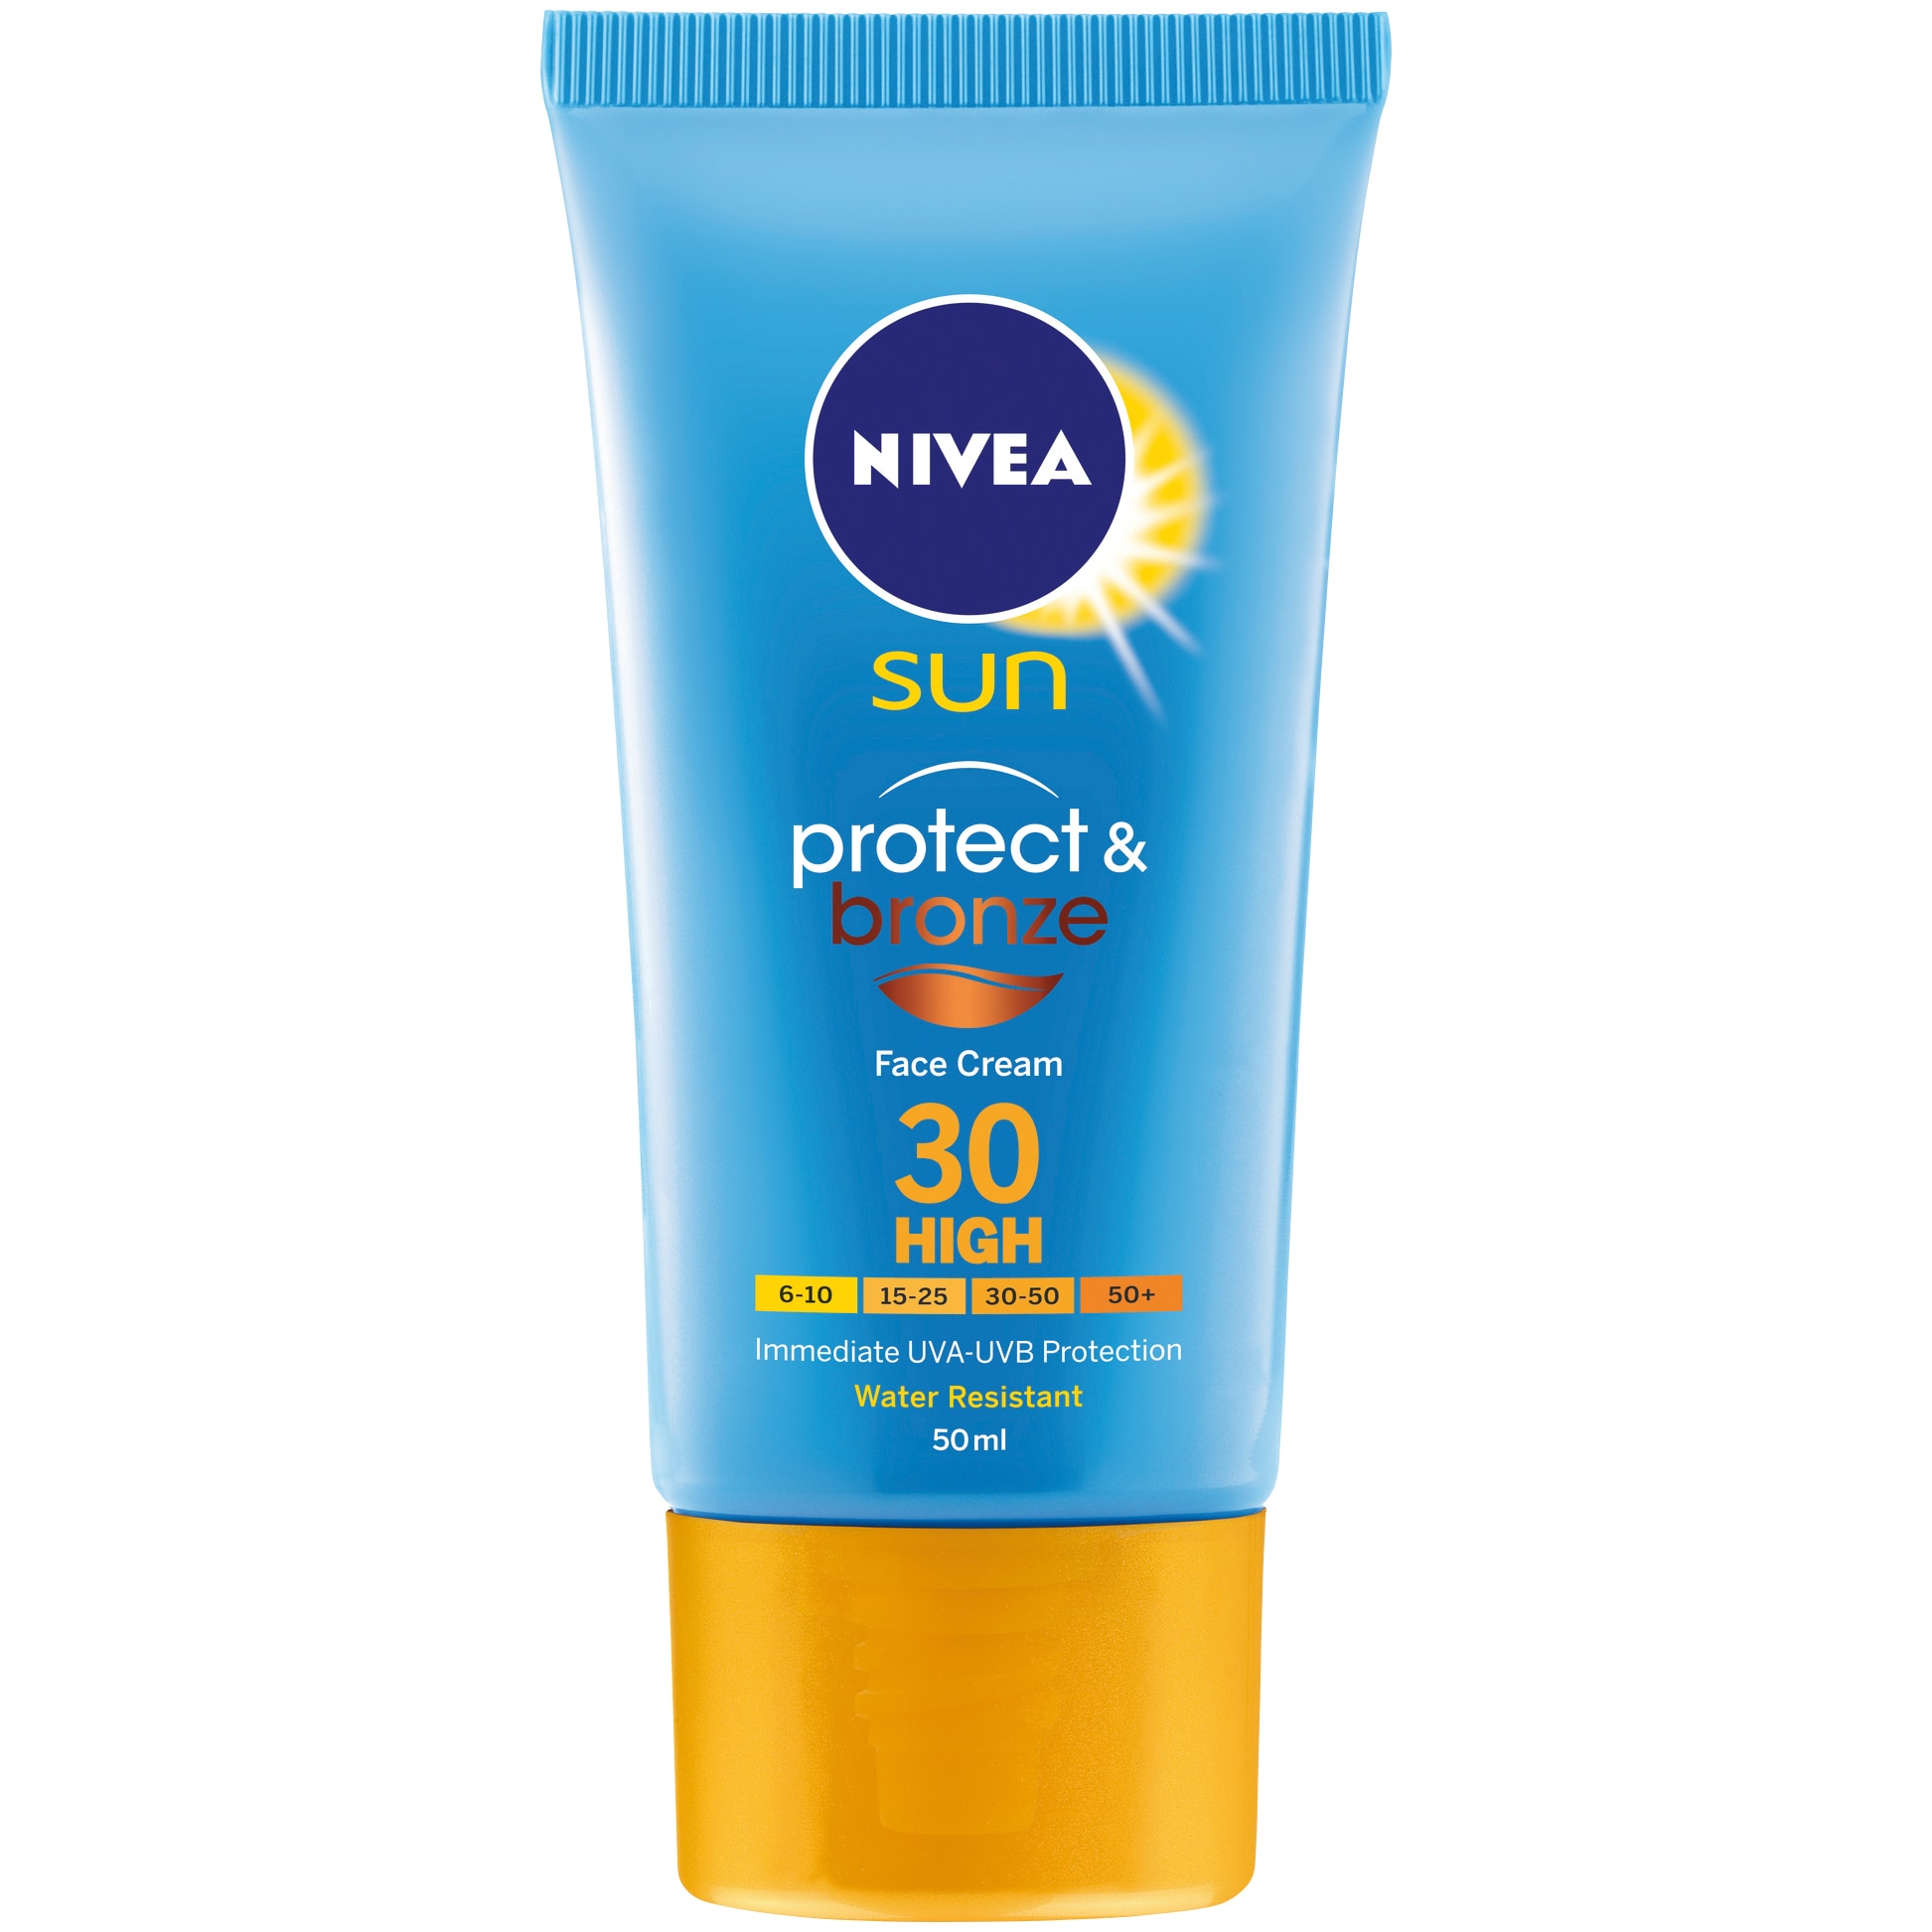 Солнцезащитный для лица. Nivea Sun SPF 50 крем. Нивея СПФ 50 для лица. Sun protect spf50 солнцезащитный крем для лица, 50 мл.. Крем нивея солнцезащитный 50 для лица.